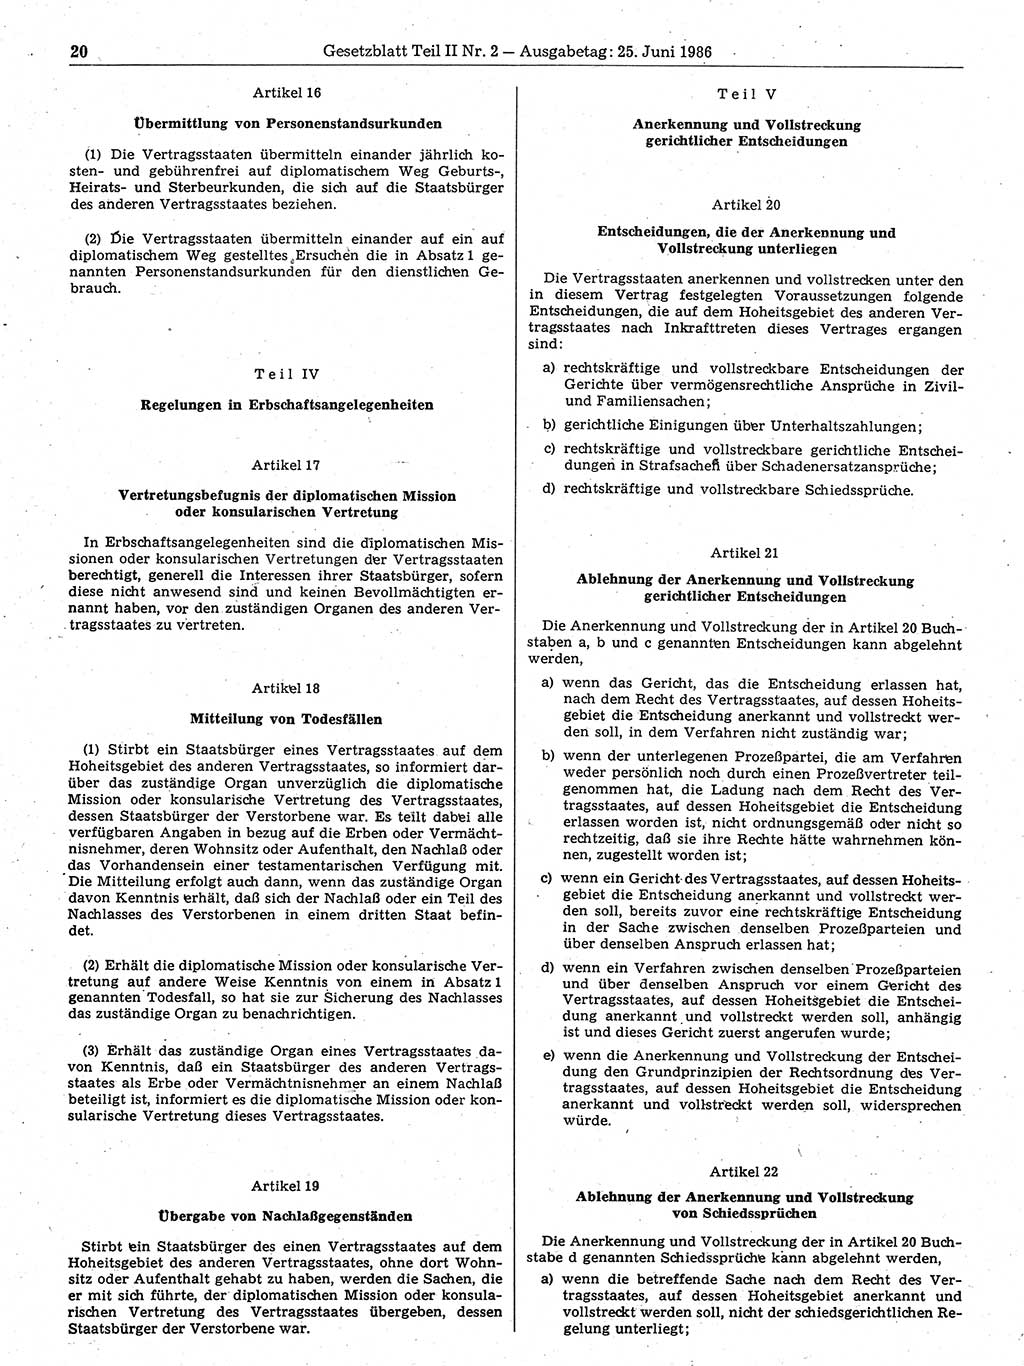 Gesetzblatt (GBl.) der Deutschen Demokratischen Republik (DDR) Teil ⅠⅠ 1986, Seite 20 (GBl. DDR ⅠⅠ 1986, S. 20)